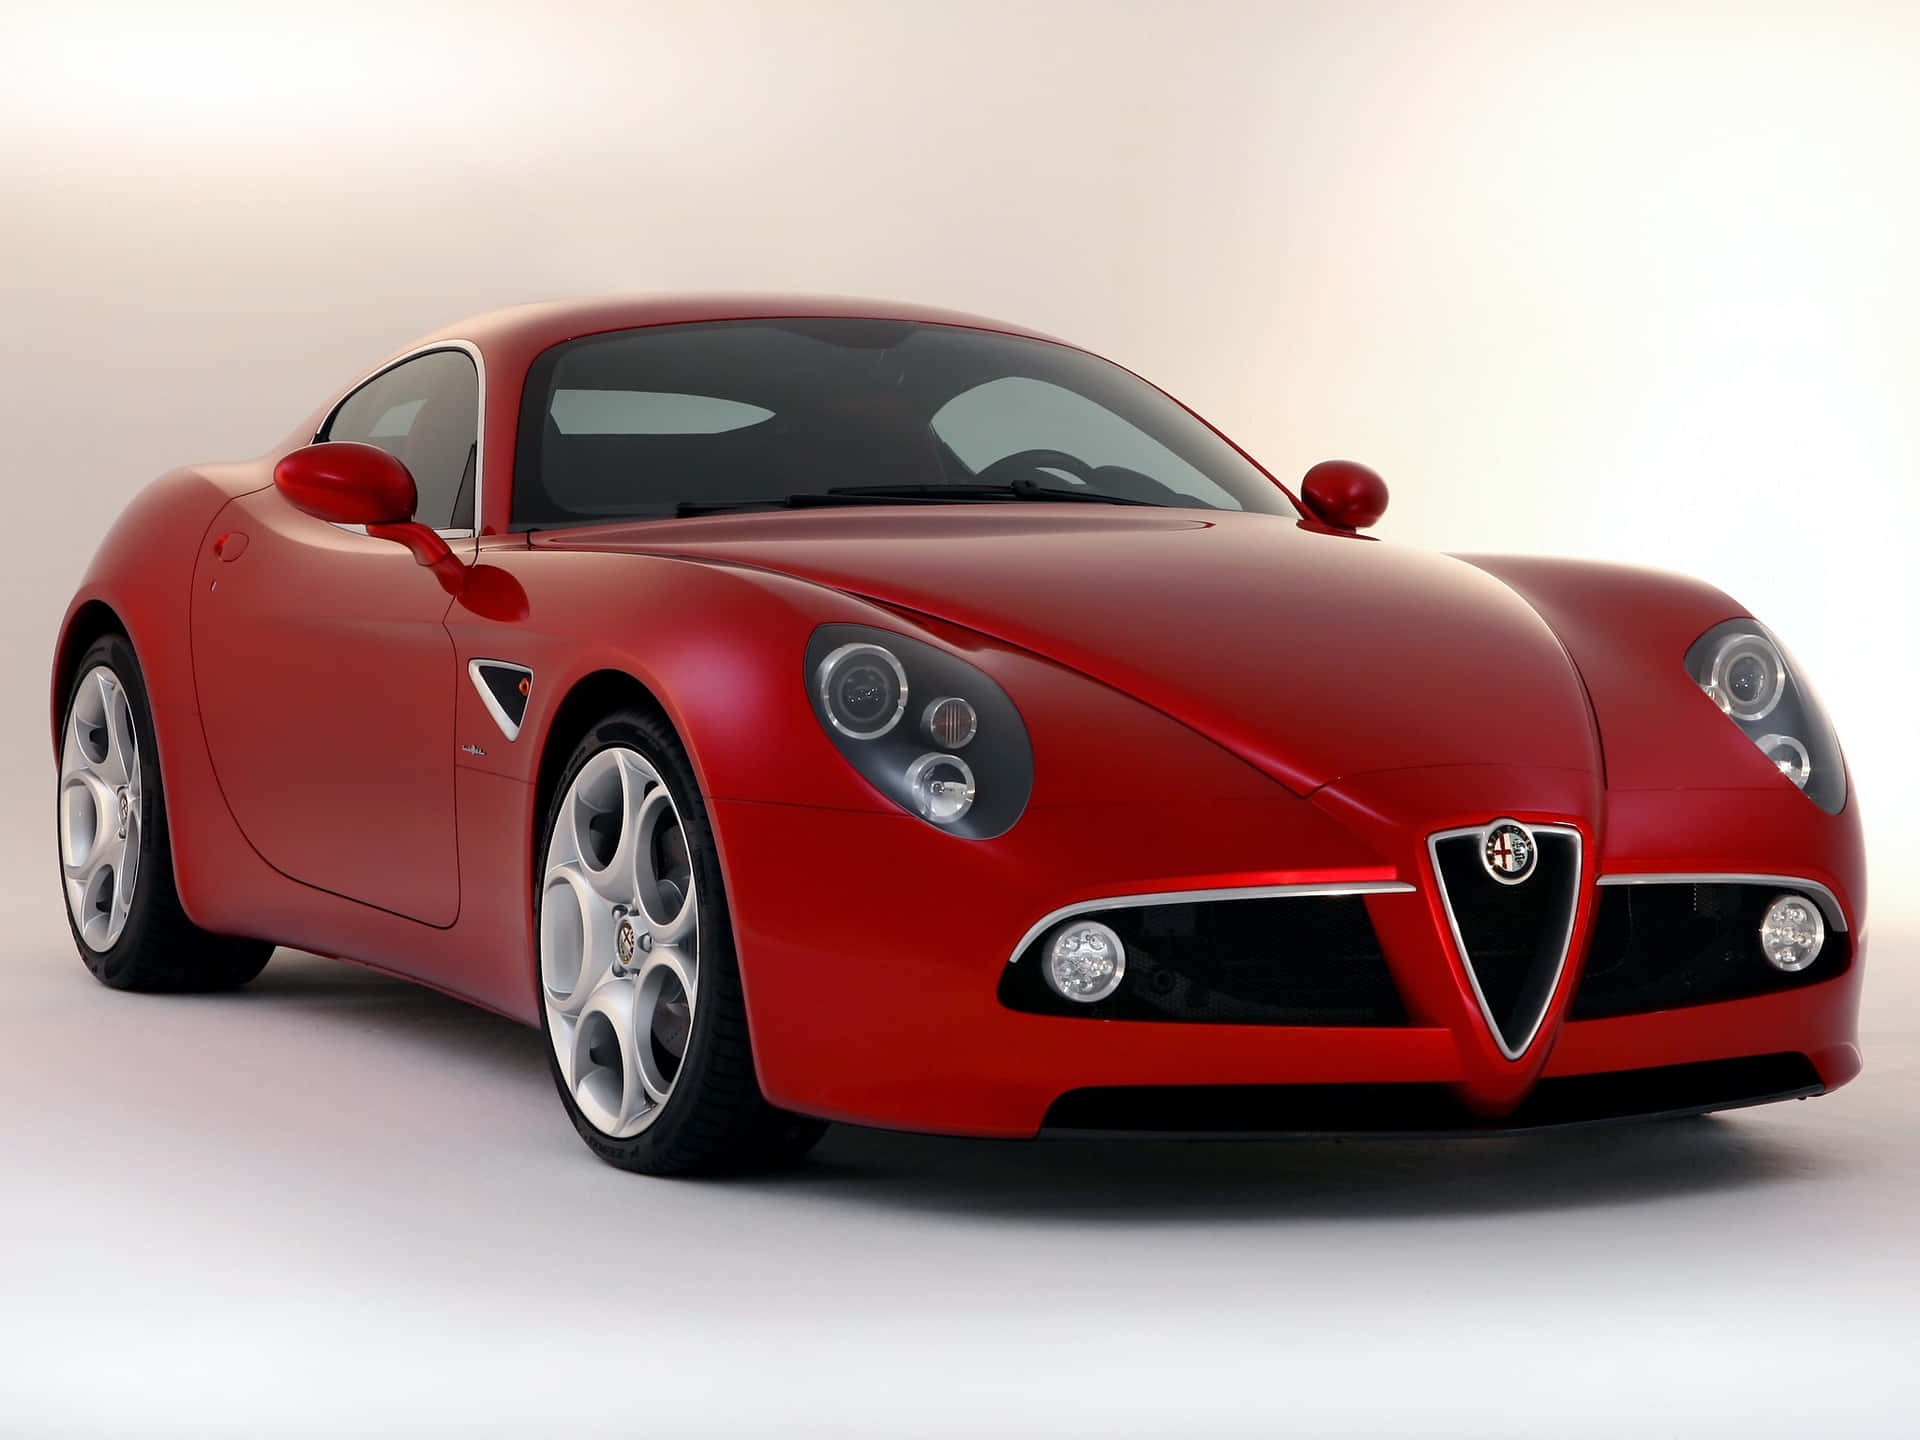 Stunning Alfa Romeo 8c Competizione in Action Wallpaper